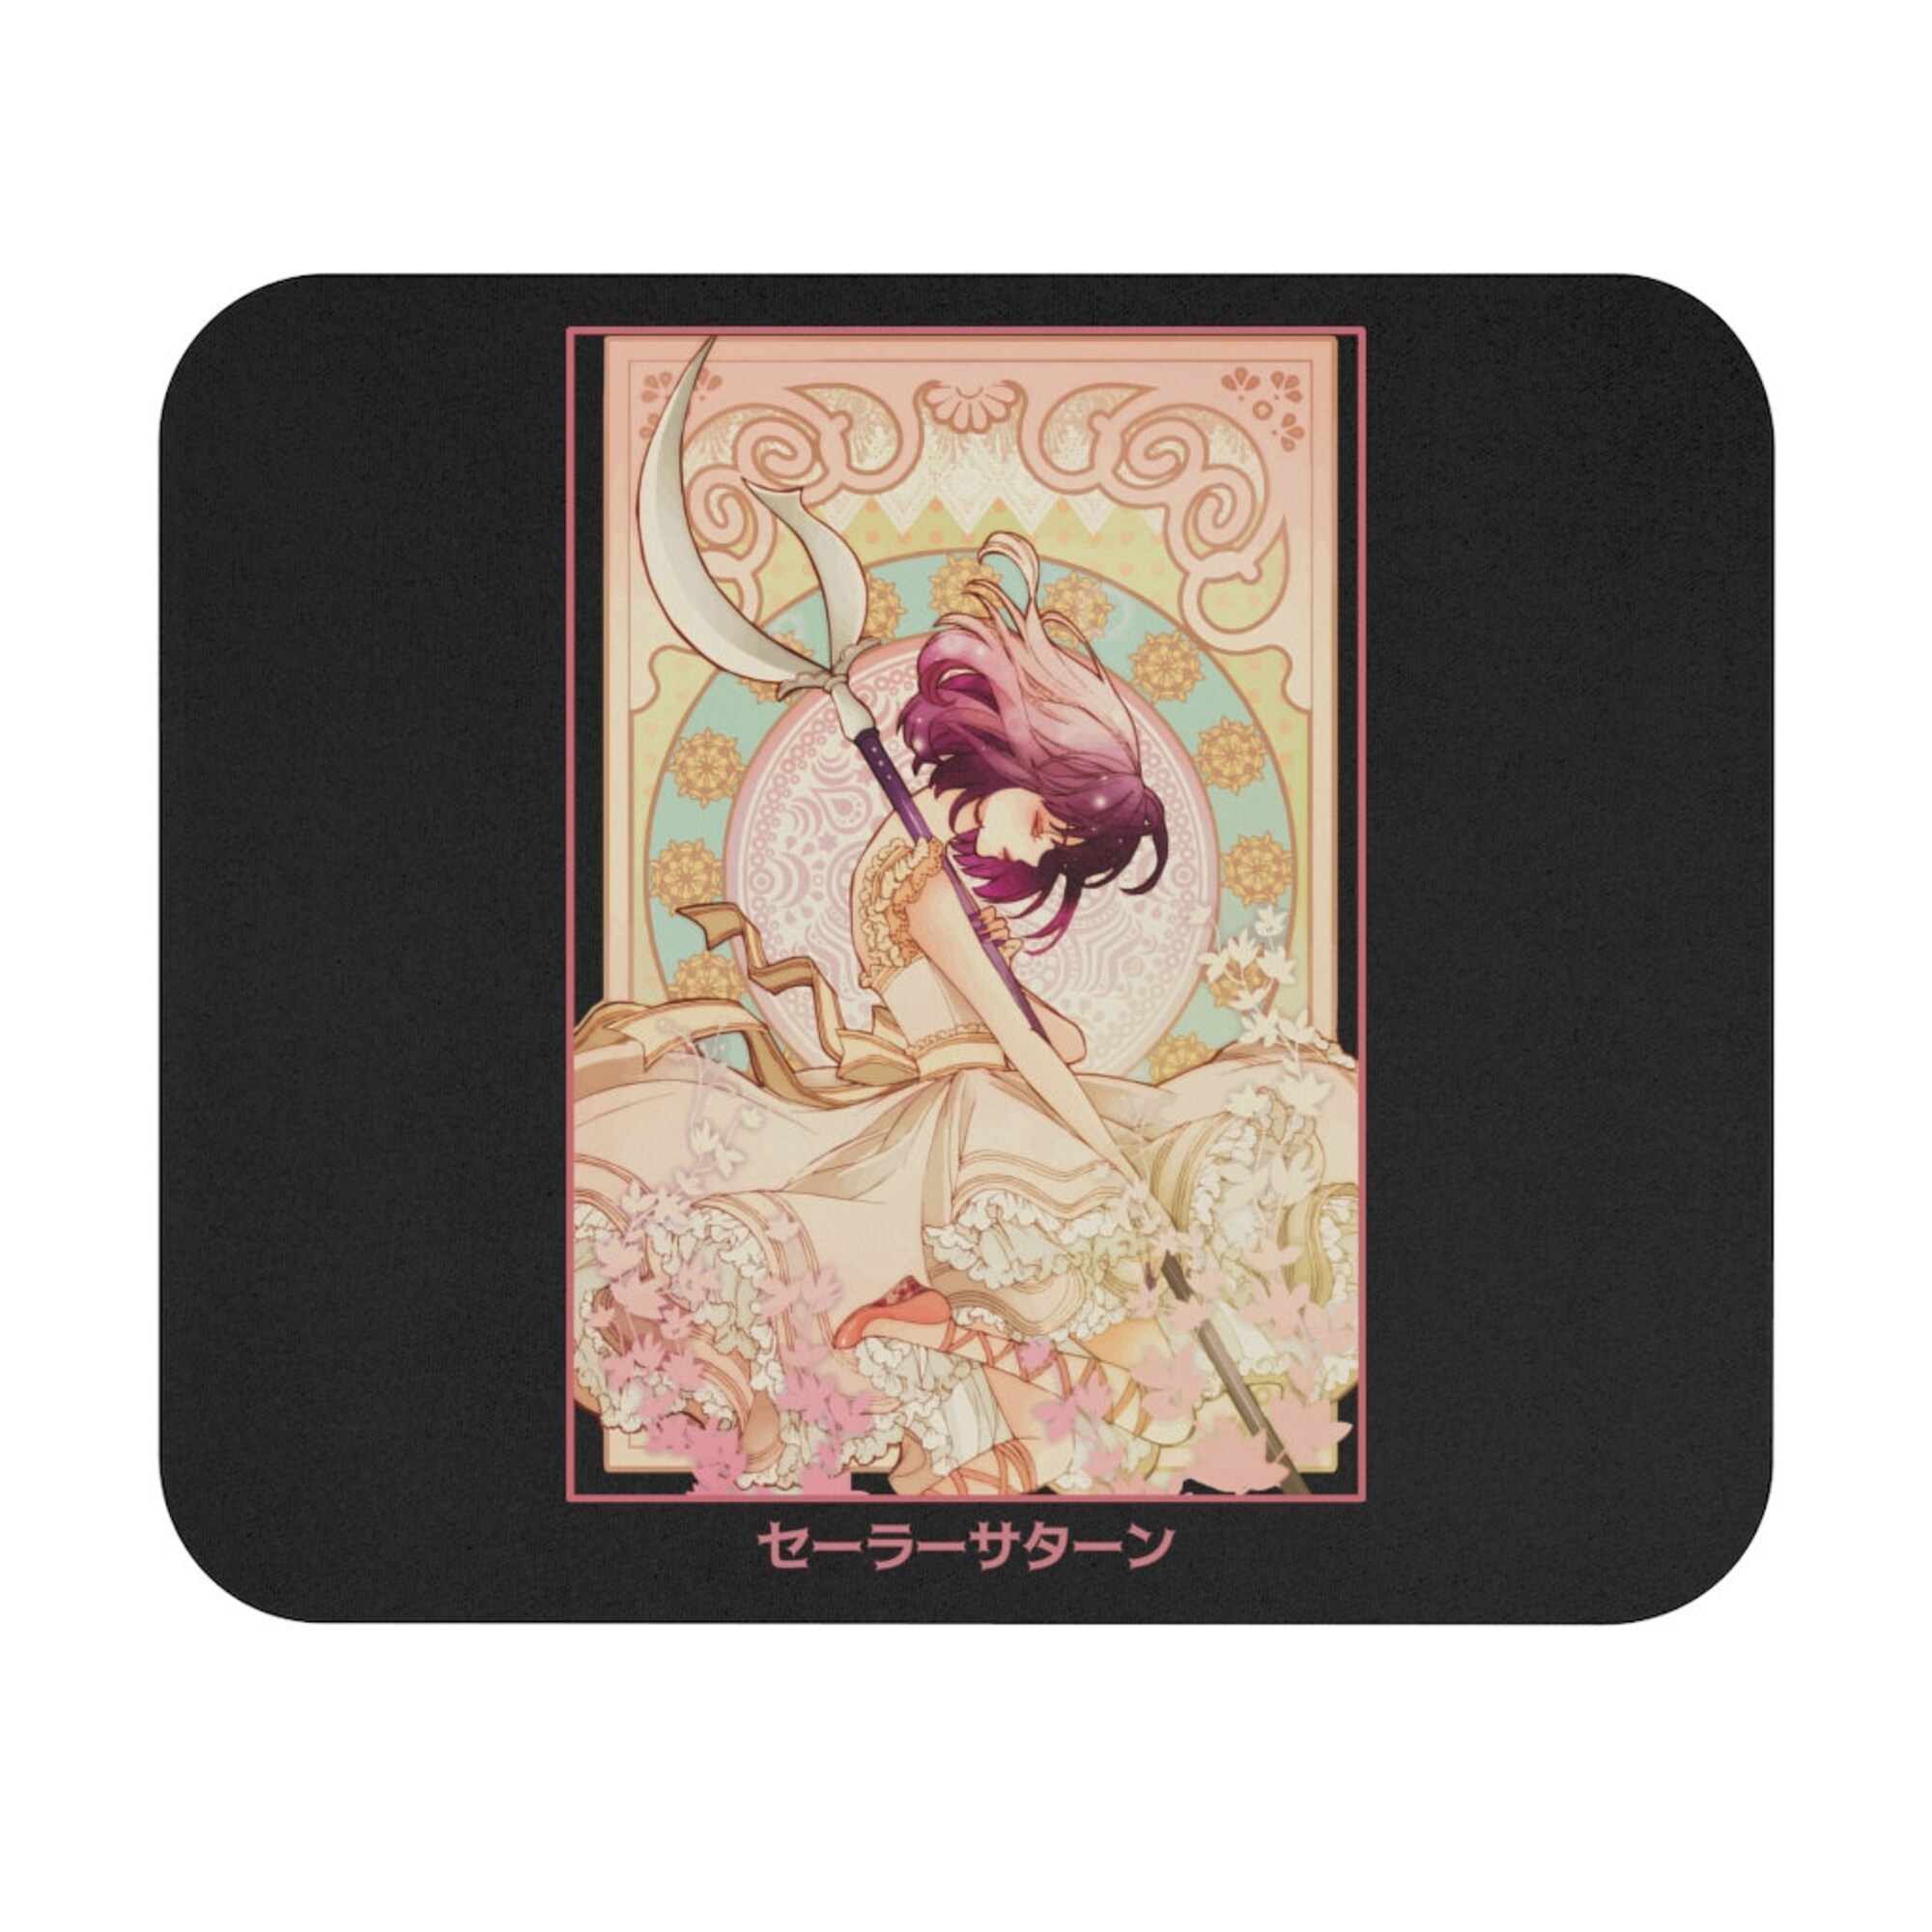 Sailor Saturn Mouse Pad-sailor saturn mouse pad,sailor saturn mouse mat